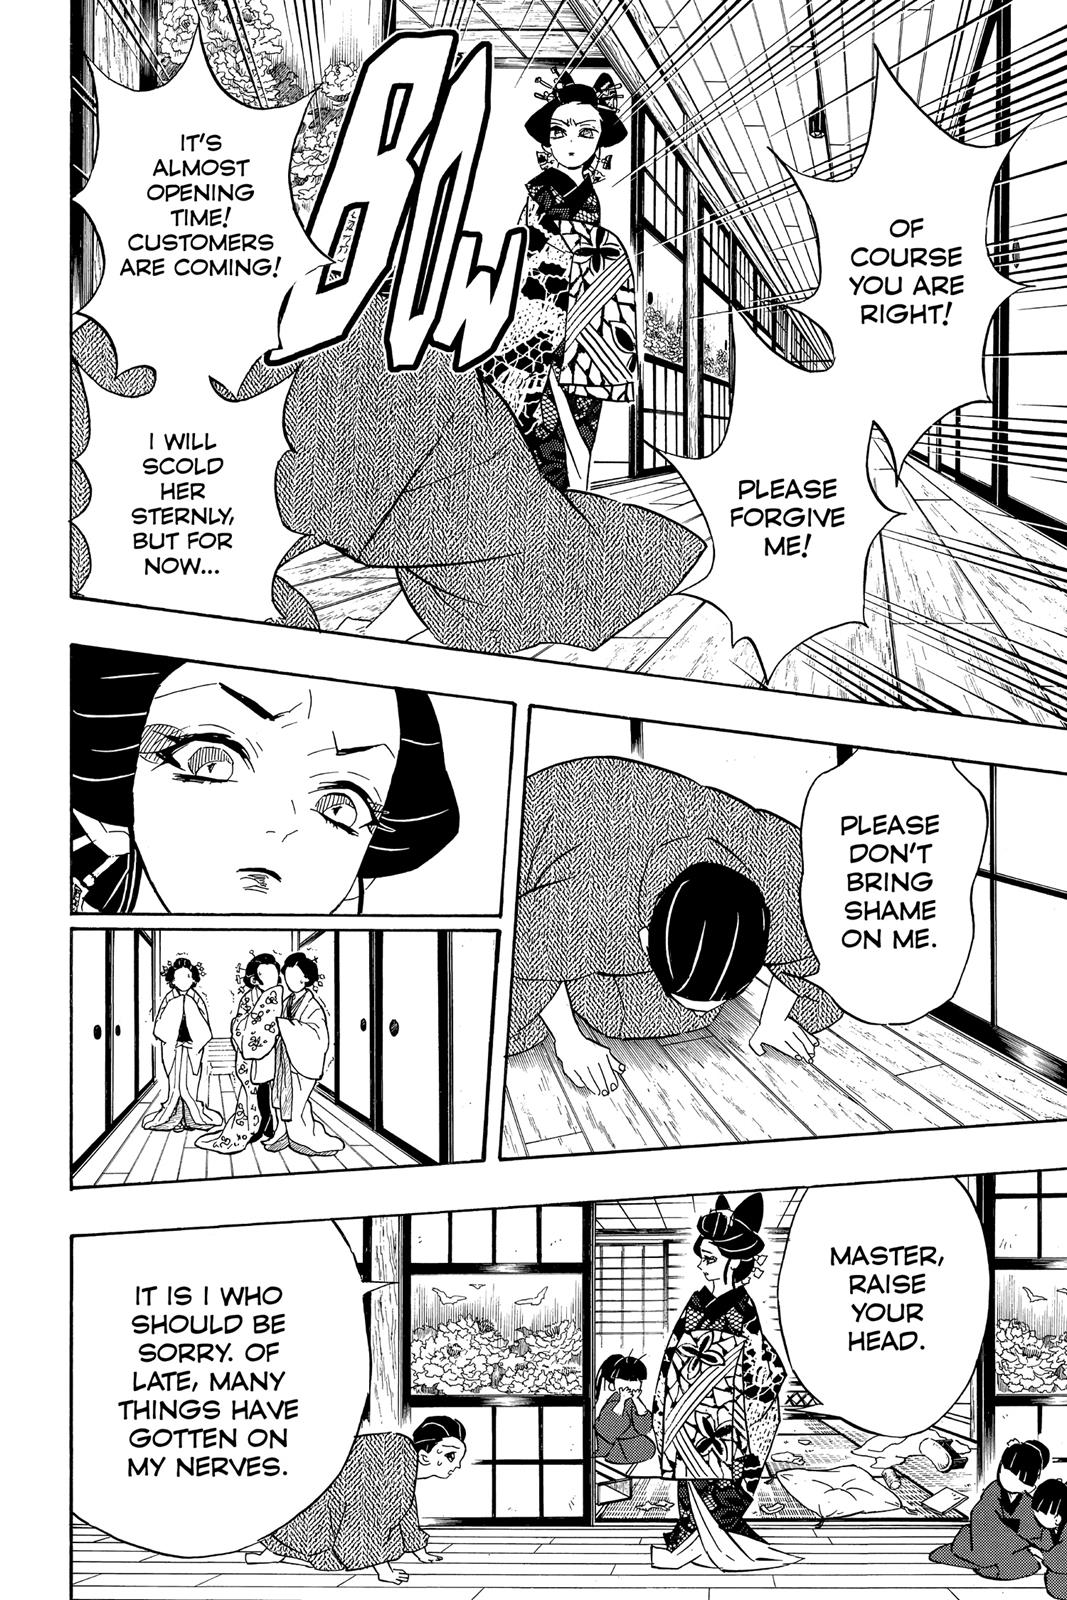 Demon Slayer Manga Manga Chapter - 74 - image 14